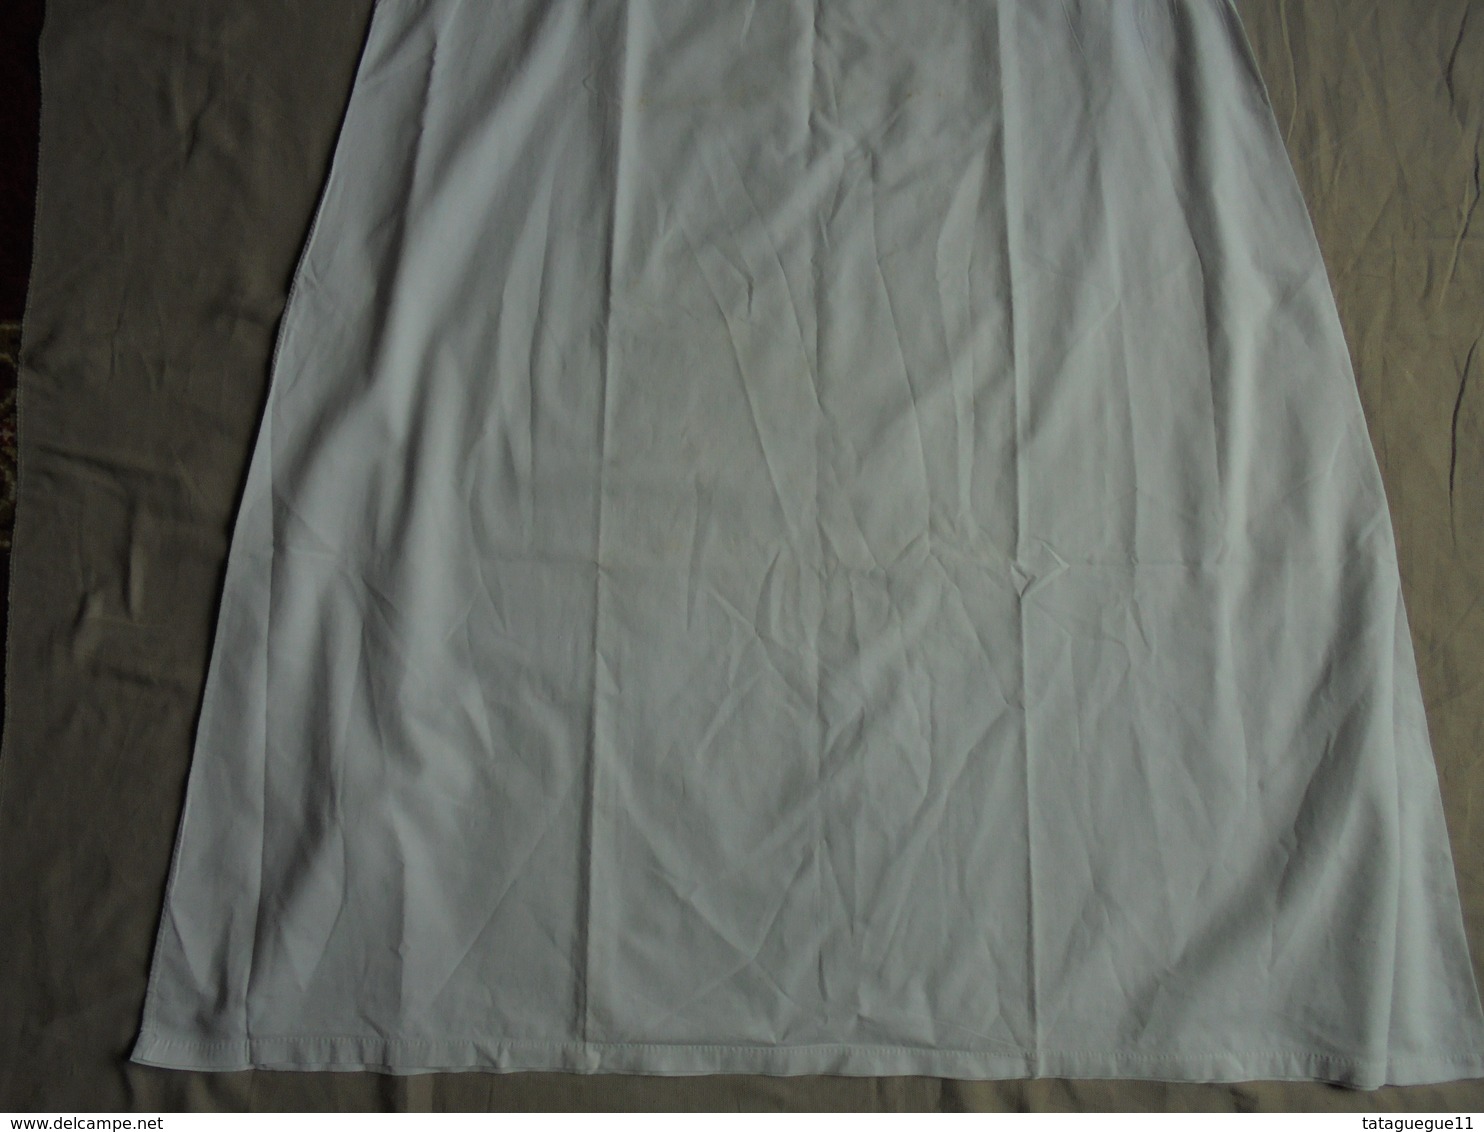 Ancien - Combinaison/chemise à bretelles en coton pour femme Années 40/50